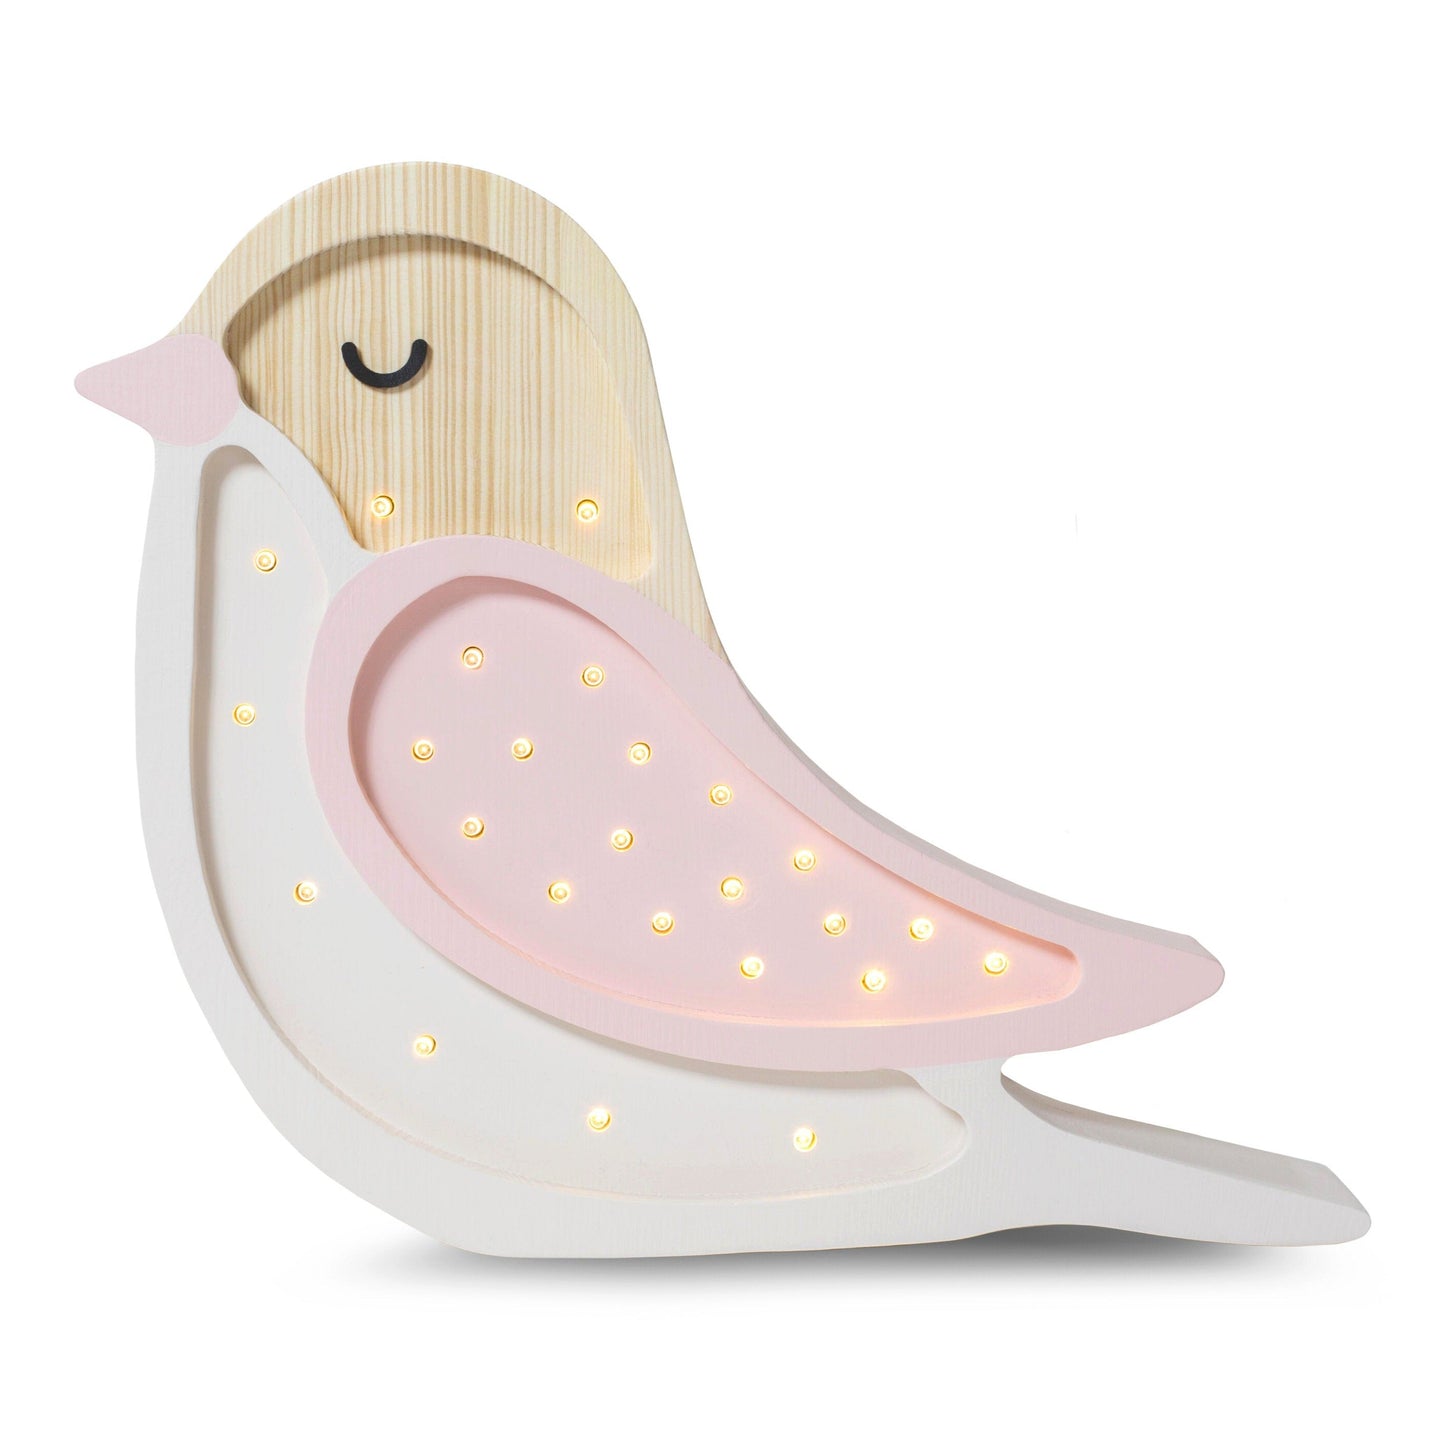 Little Lights Bird Lamp by Little Lights US